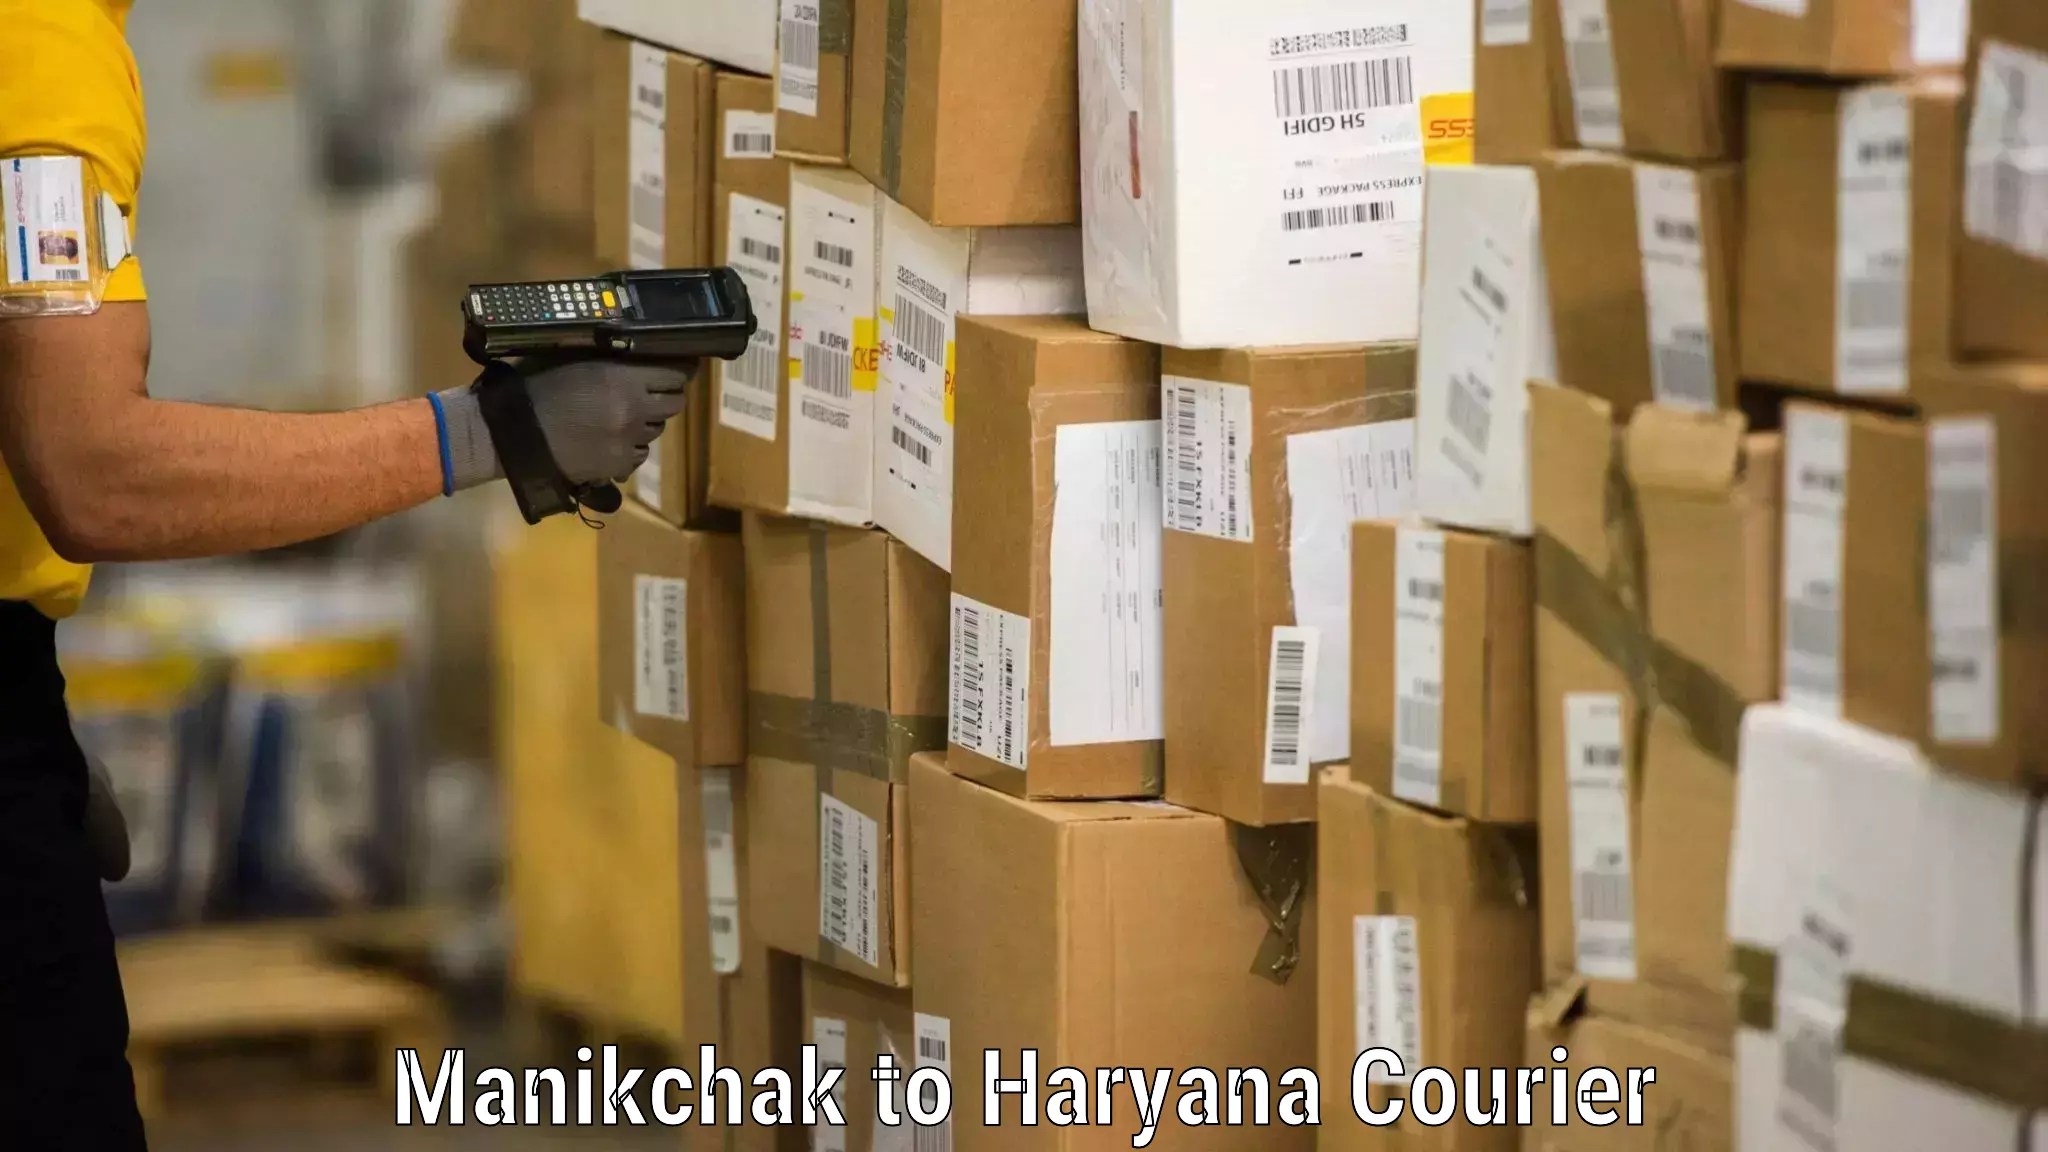 Furniture transport experts Manikchak to Haryana